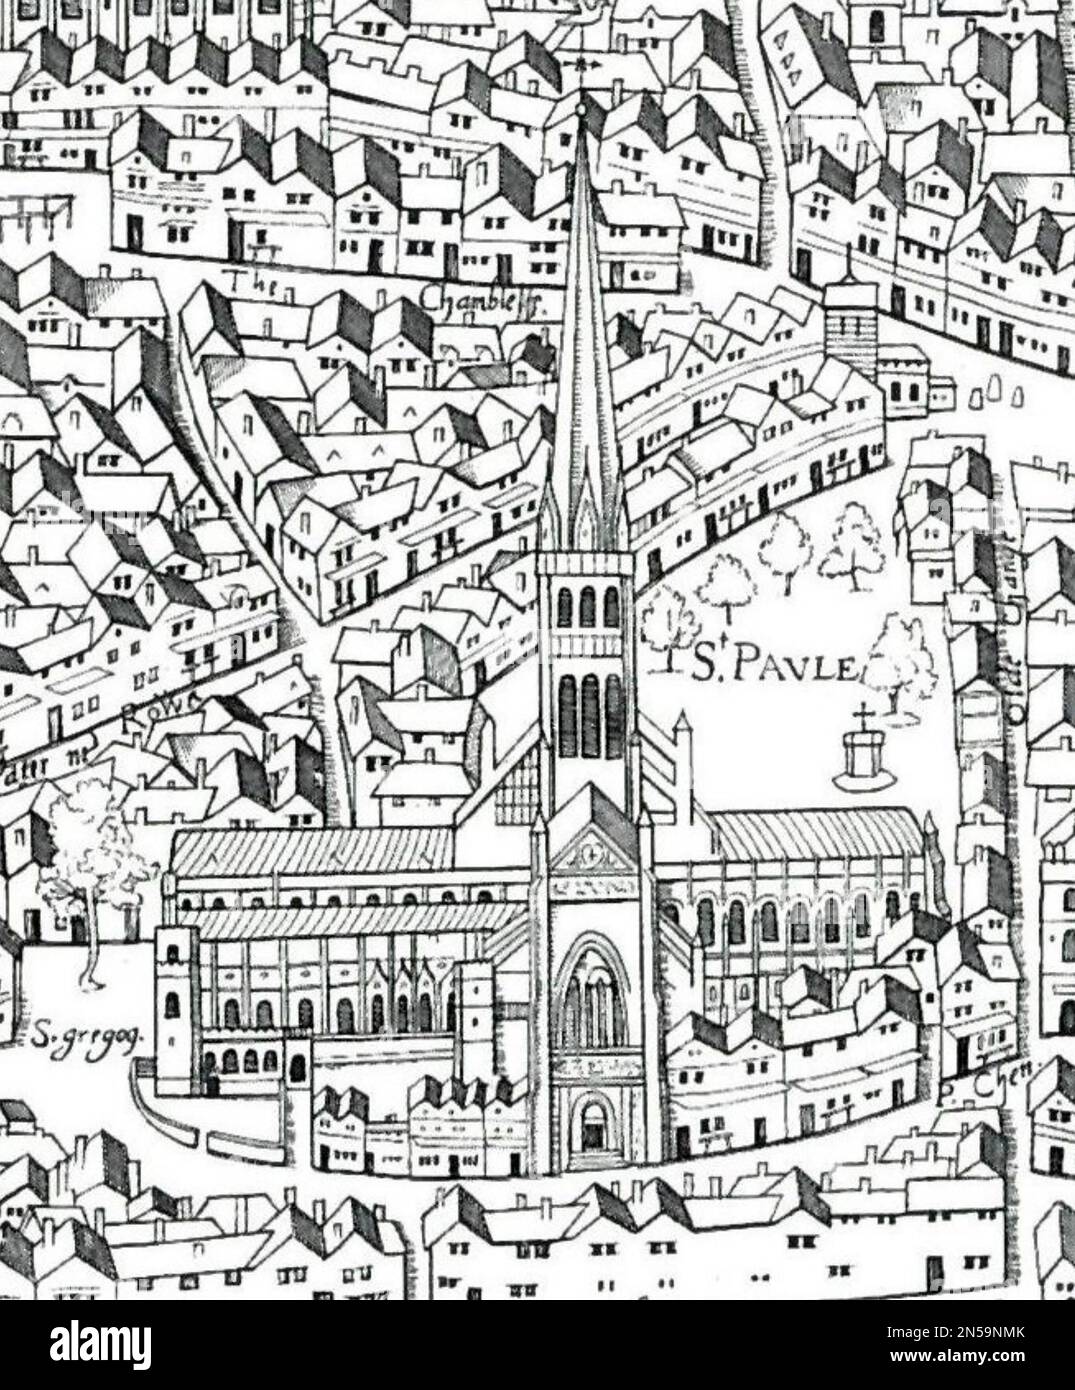 CATHÉDRALE SAINT-PAUL dans la carte de Londres de Copperplate, publiée 1553-1559. Banque D'Images